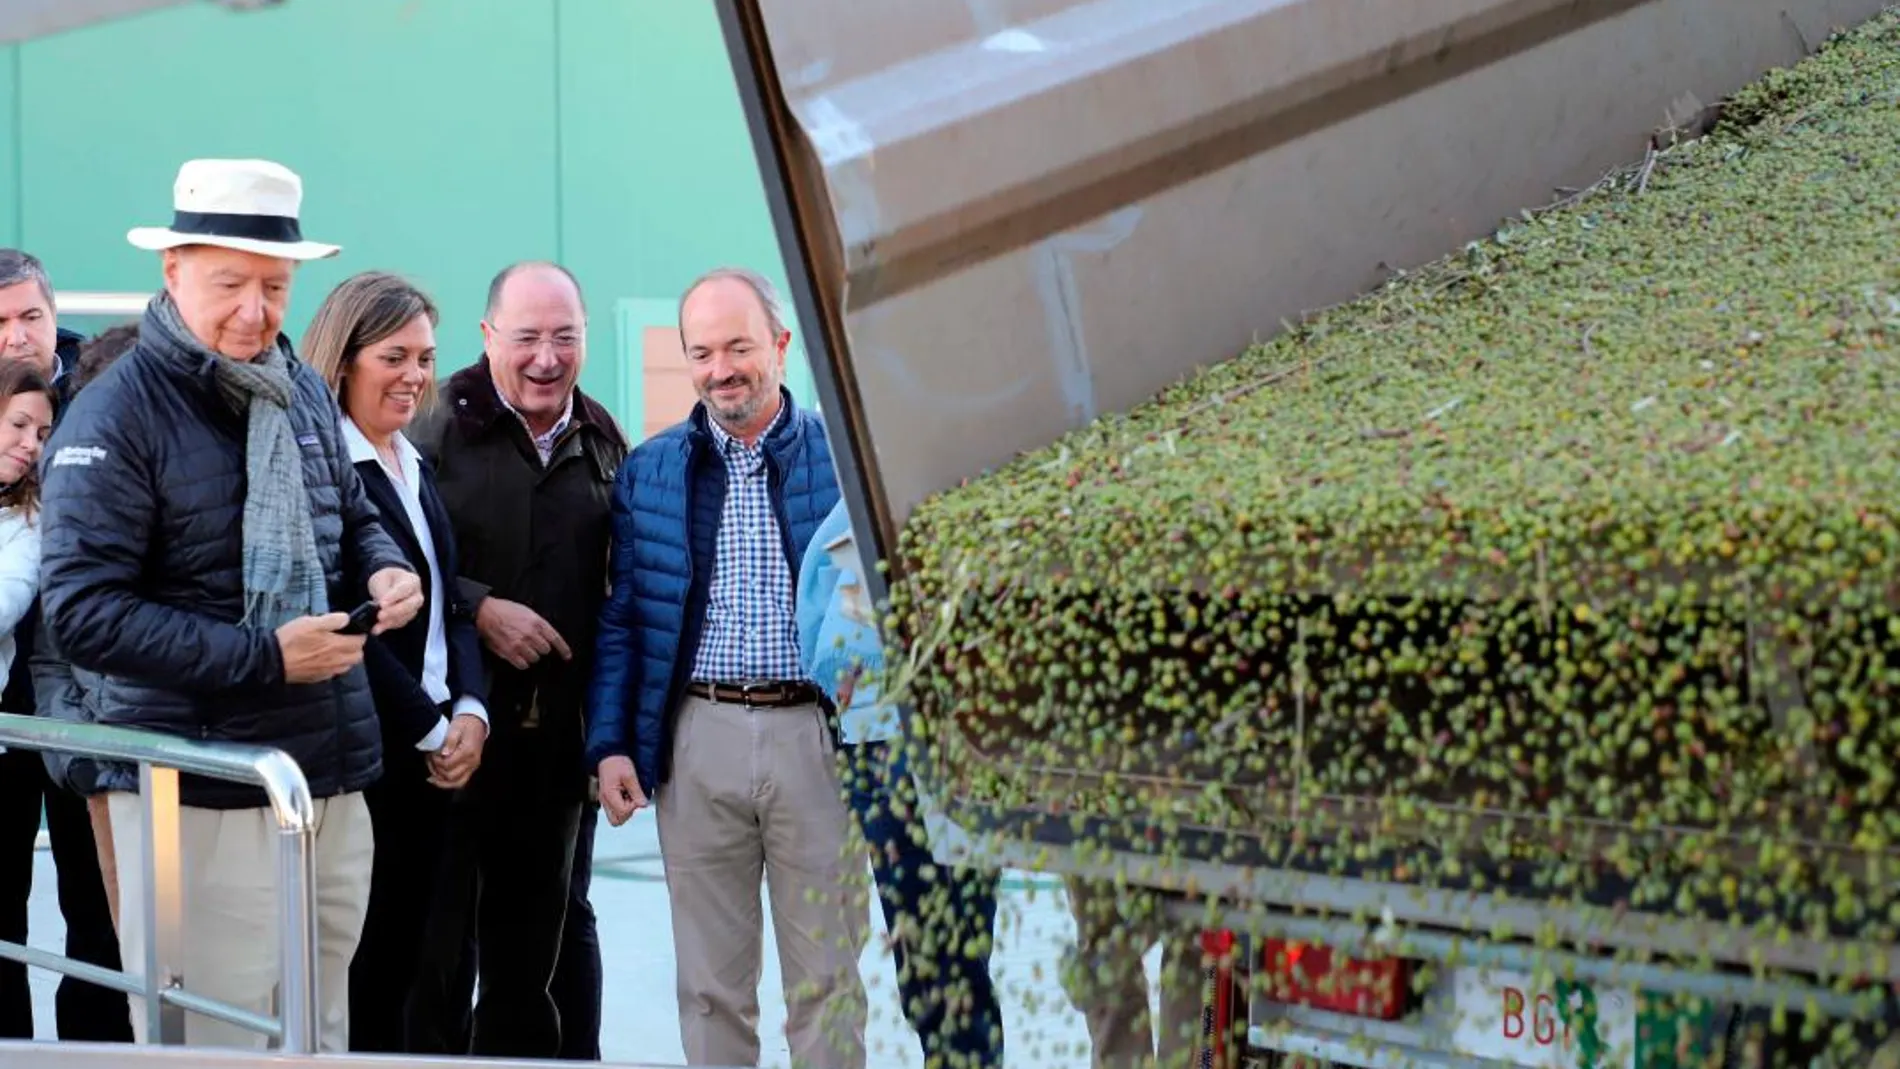 La consejera Milagros Marcos, junto al bodeguero Carlos Moro y el crítico gastronómico Carlos Capel, observan como descargan olivas en Oliduero (Medina del Campo)